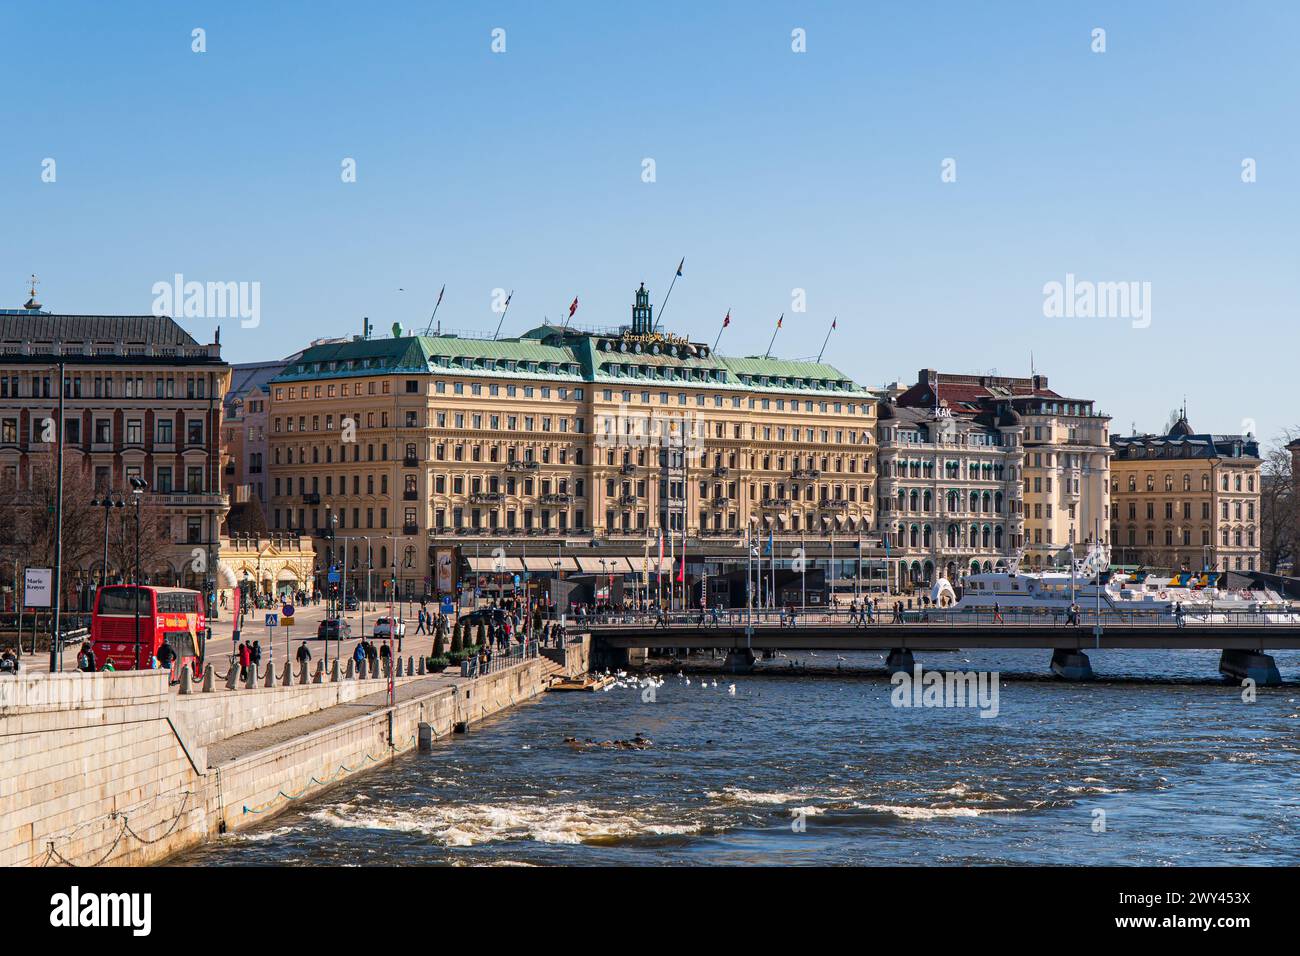 La città vecchia di Stoccolma e il centro di stoccolma. Il Grand hotel, bandiere svedesi, ponte Strömbron. Luce solare intensa, primavera. Cielo blu. Foto Stock